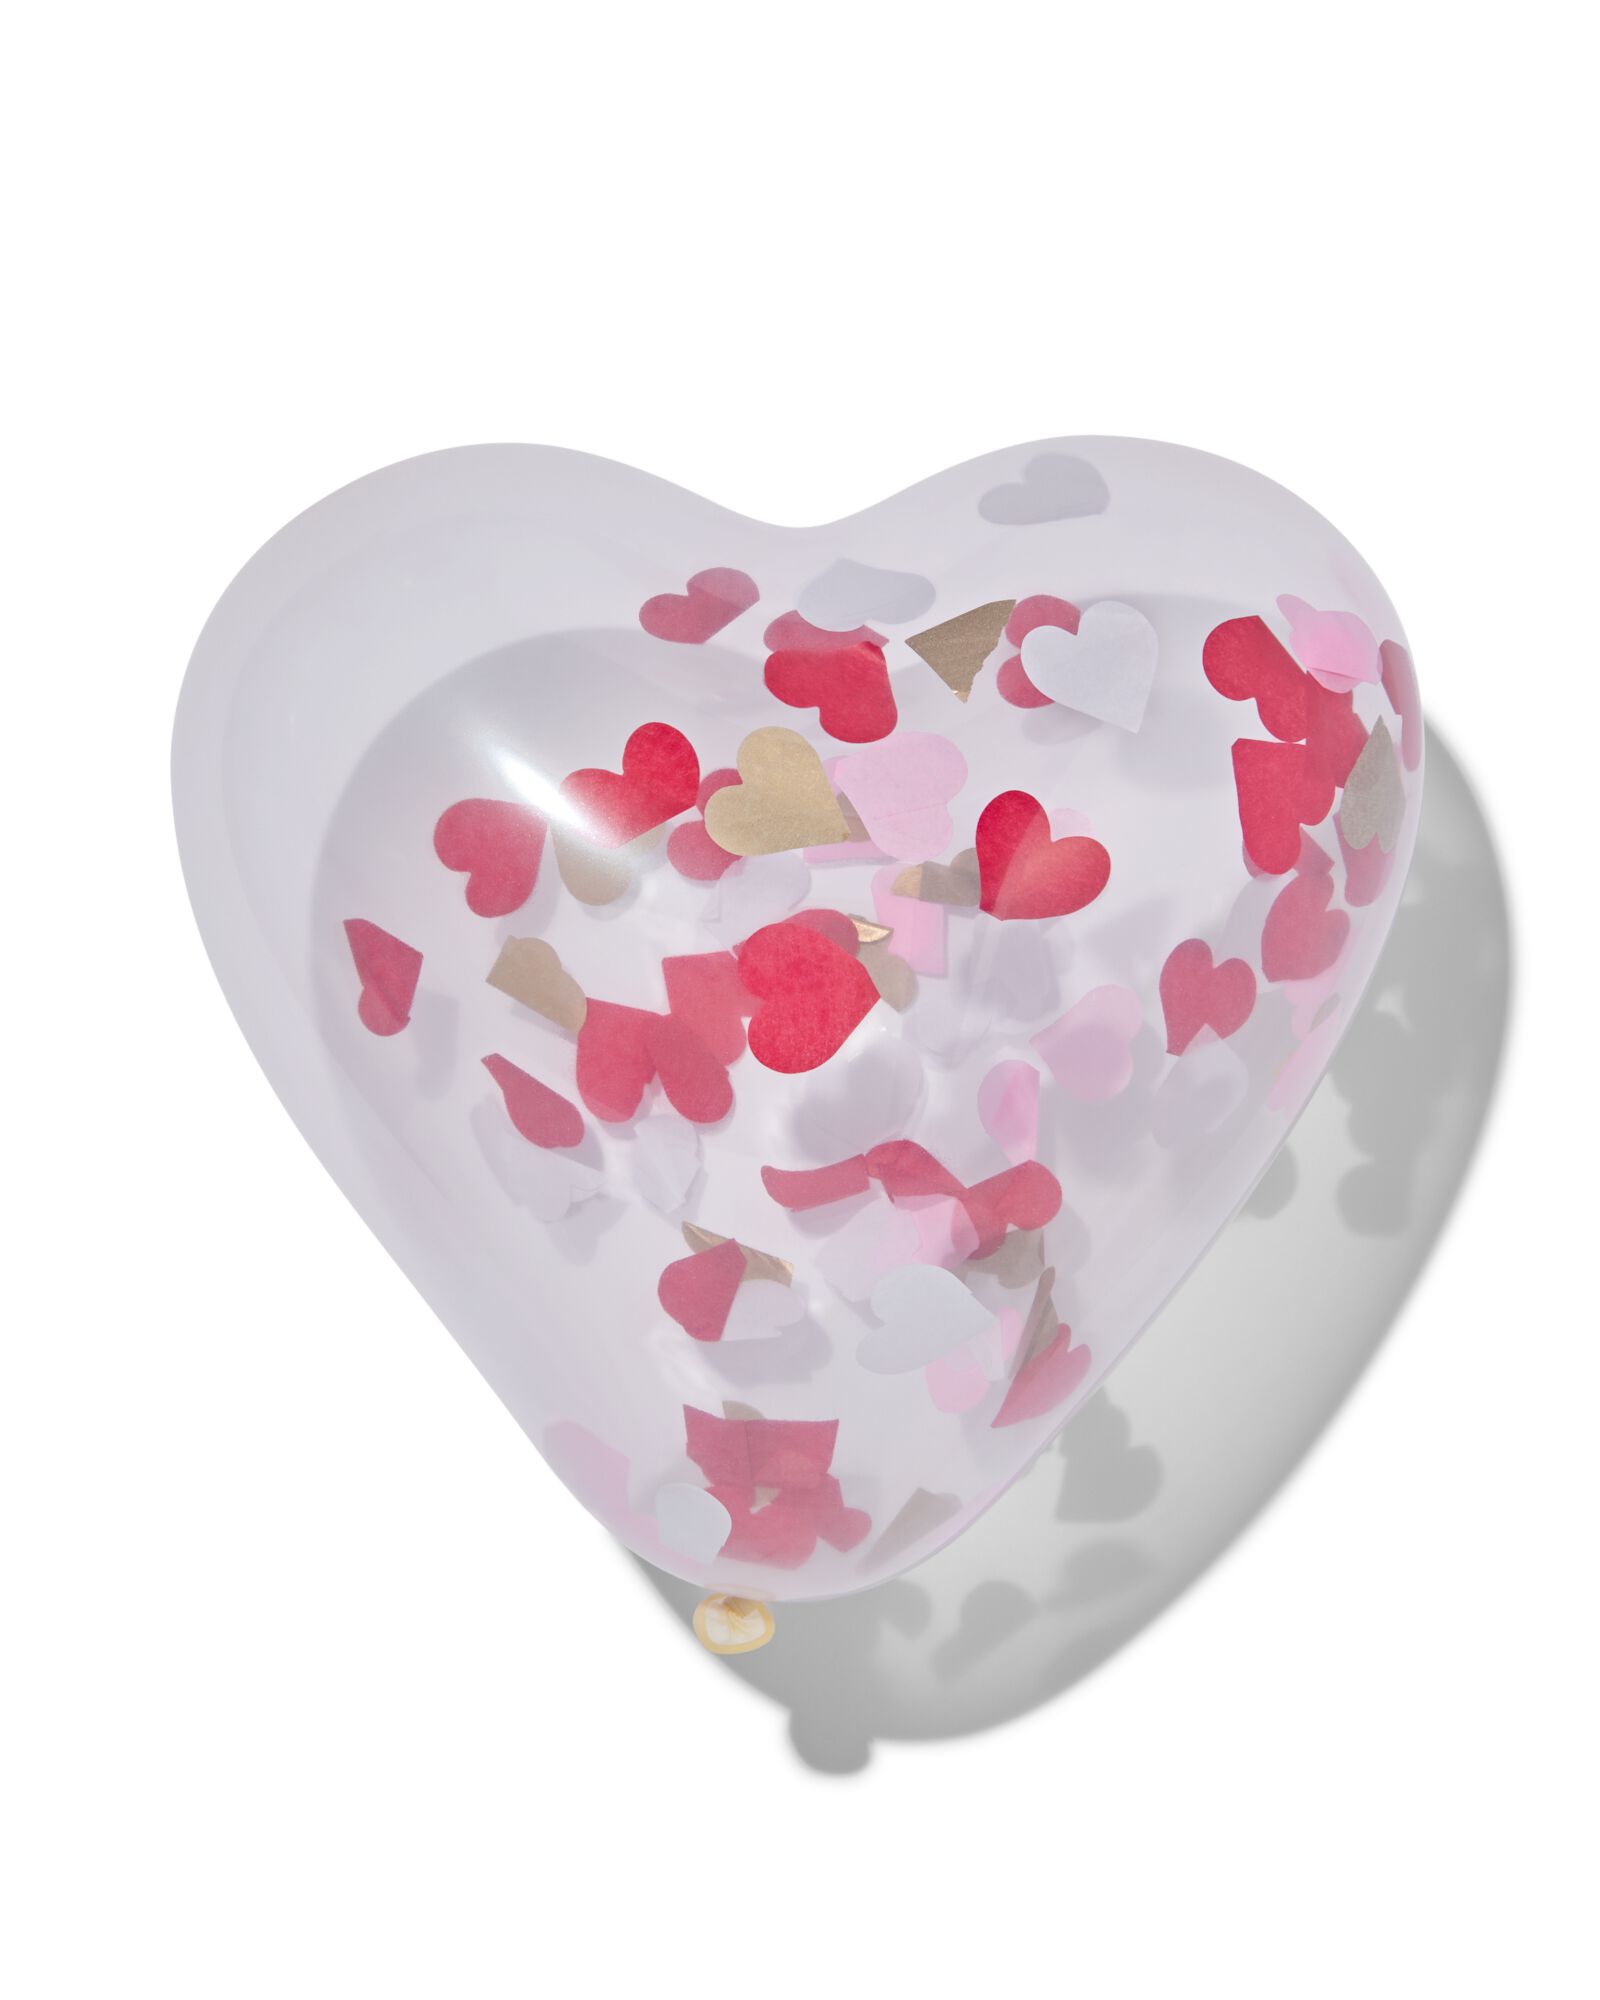 Ballon Joyeux anniversaire + confettis x 6 - Boutique Poubeau